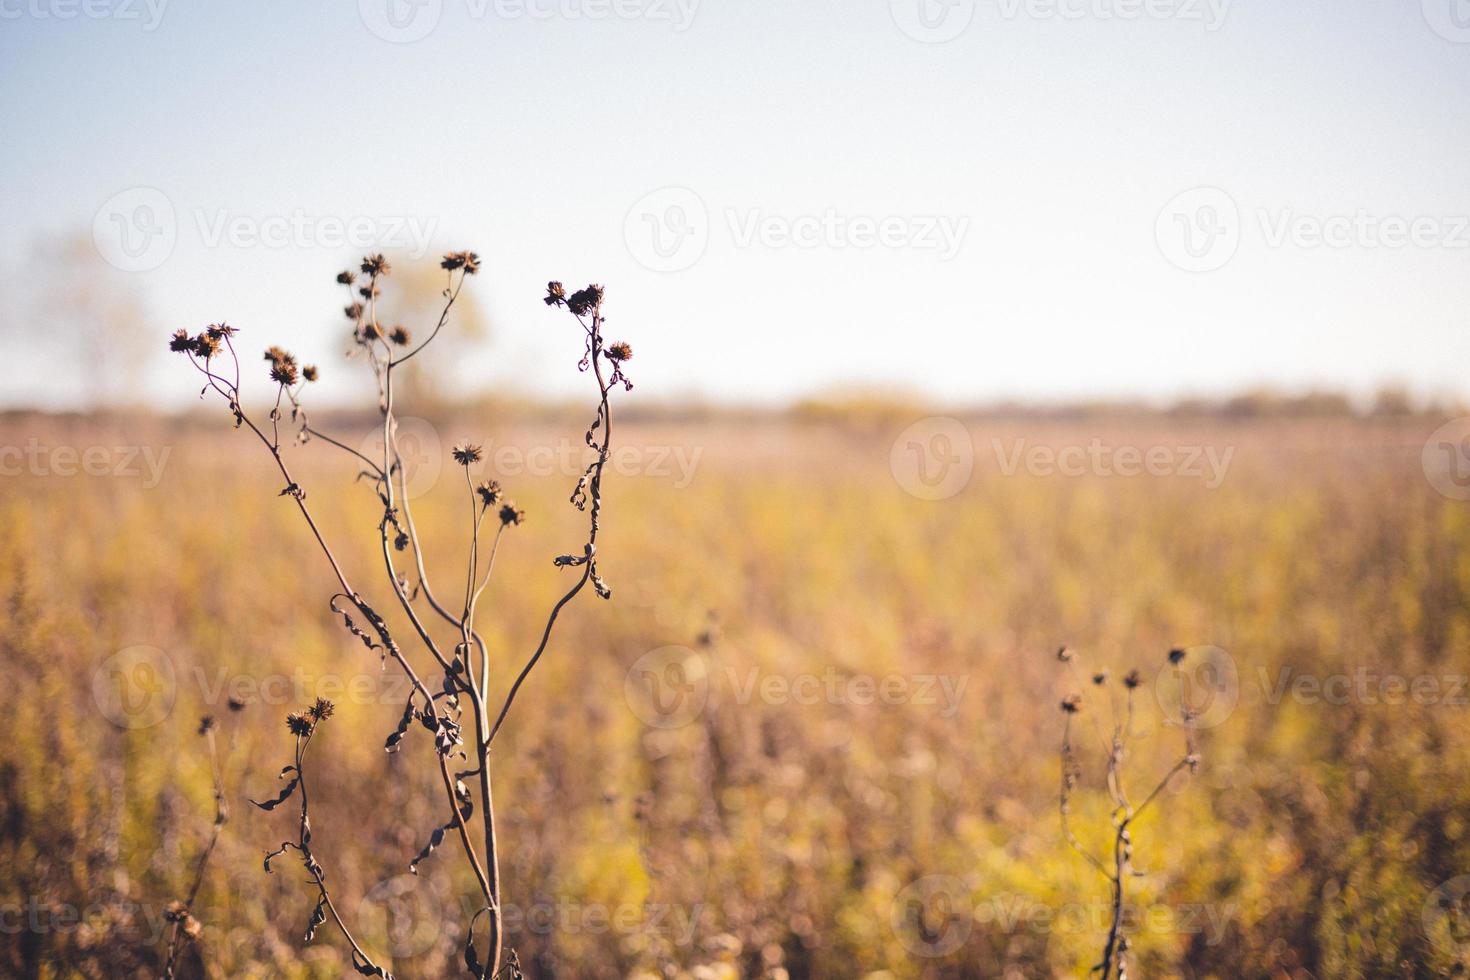 plantas secas únicas com sementes ainda presas, com pico acima das gramíneas amarelas selvagens do outono. céu azul no horizonte. foto